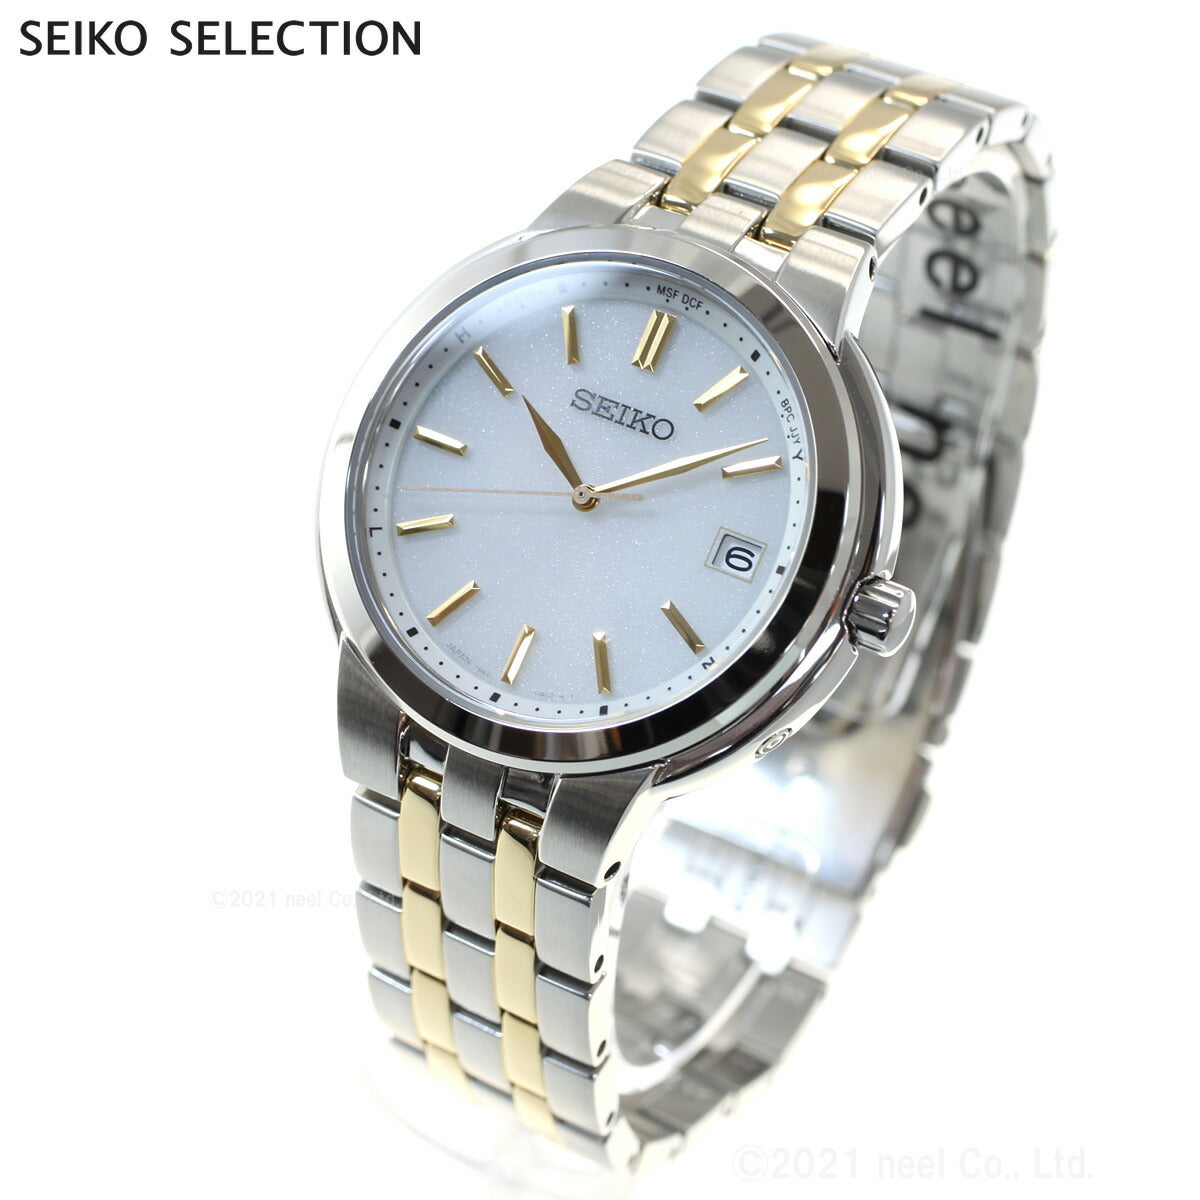 セイコー セレクション SEIKO SELECTION ソーラー 電波時計 腕時計 メンズ レディース ペアモデル SBTM285 SSDY035